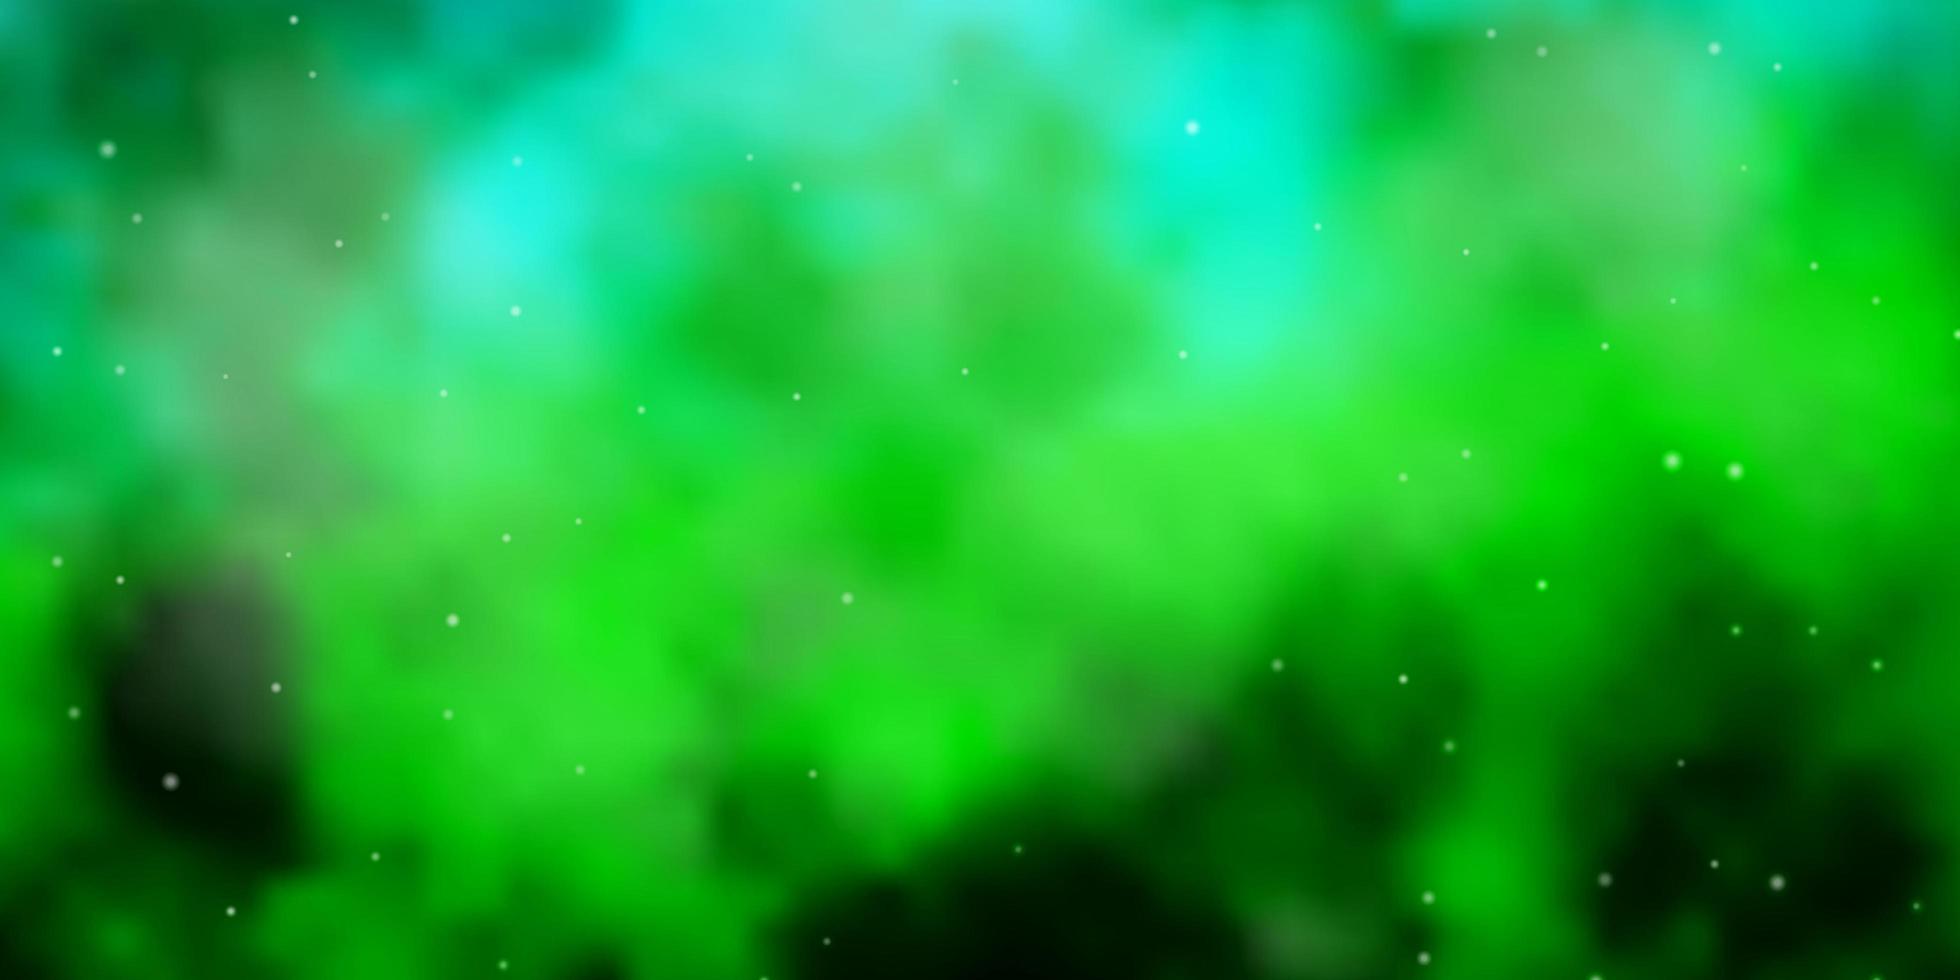 patrón de vector verde azul claro con estrellas abstractas diseño decorativo borroso en estilo simple con tema de estrellas para teléfonos celulares